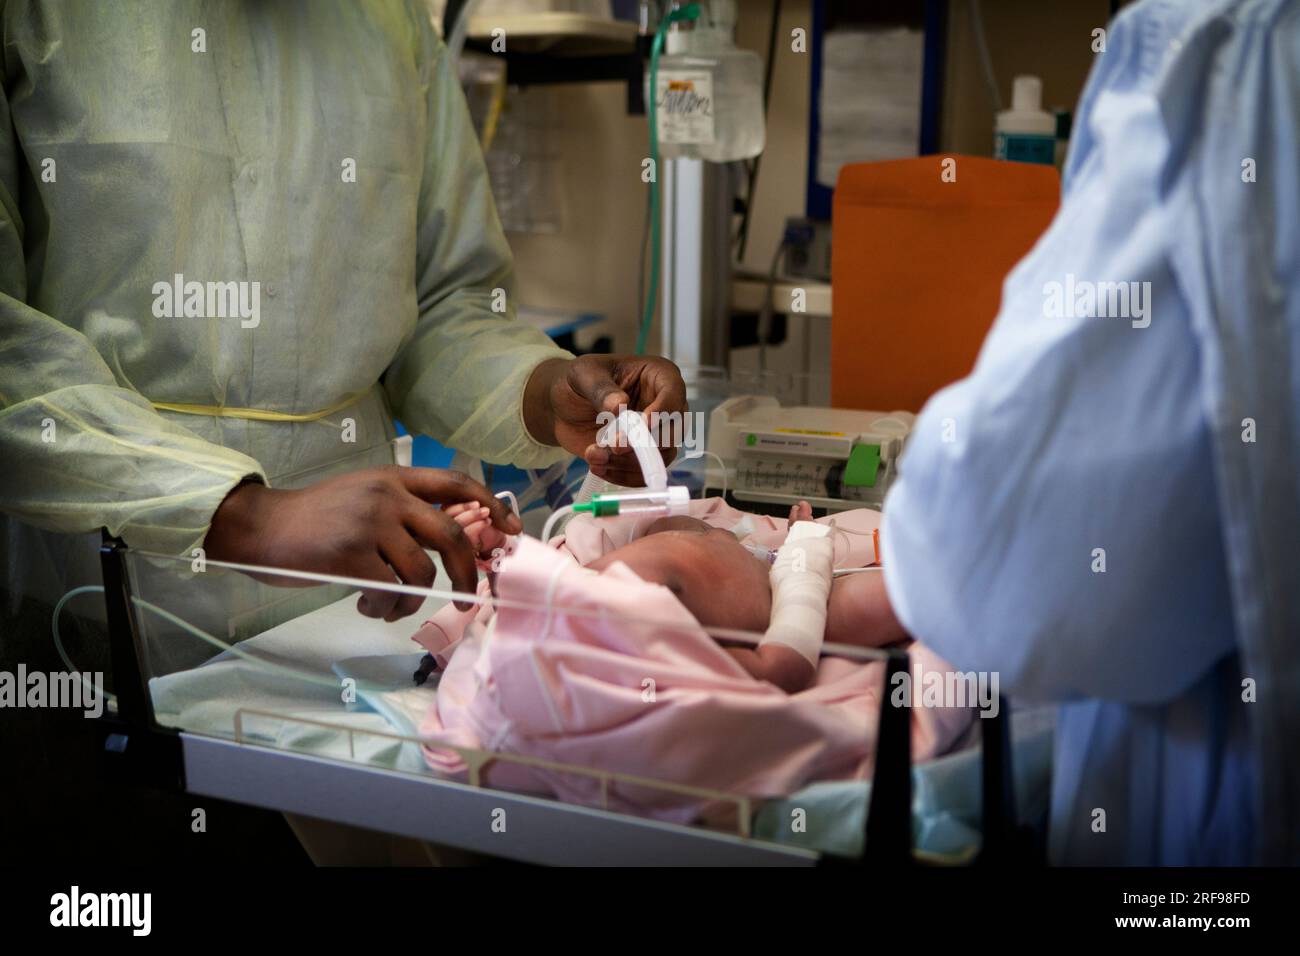 Le emergenze pediatriche intervengono in un ospedale per un neonato che ha difficoltà respiratorie. Foto Stock